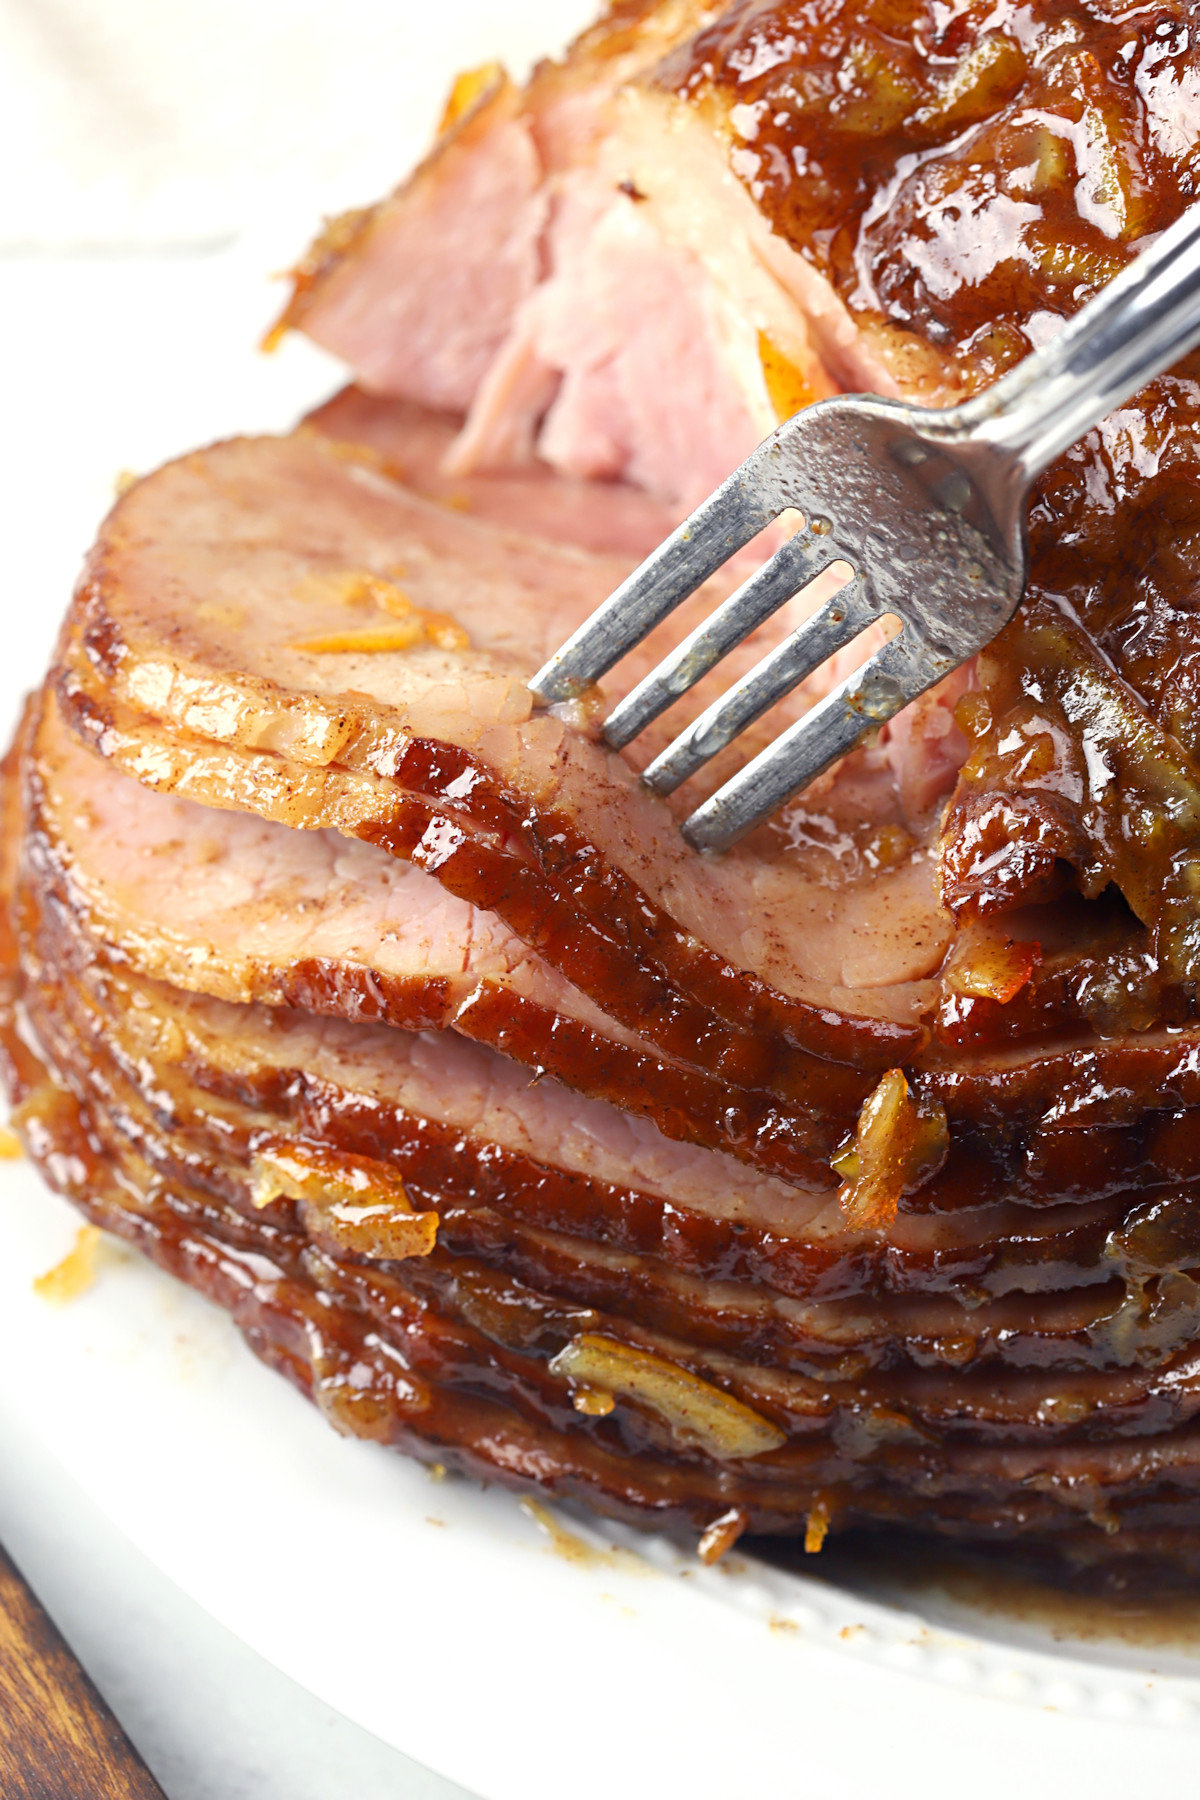 A fork serving slices of glazed ham.